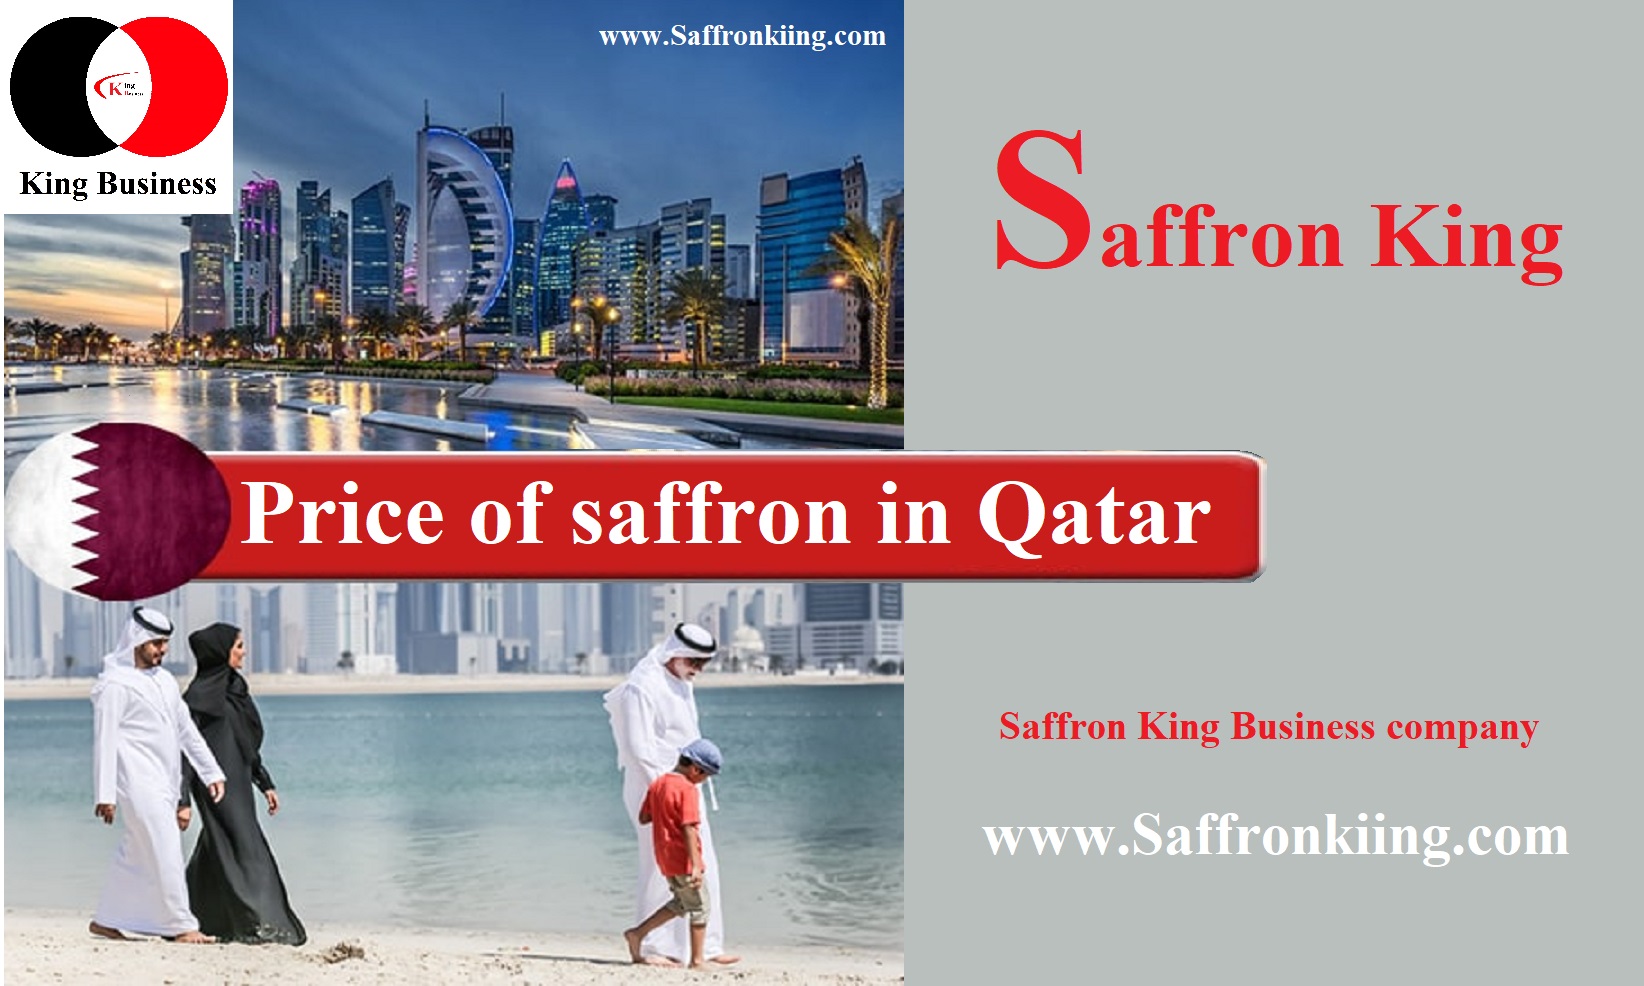 Price of saffron in Qatar